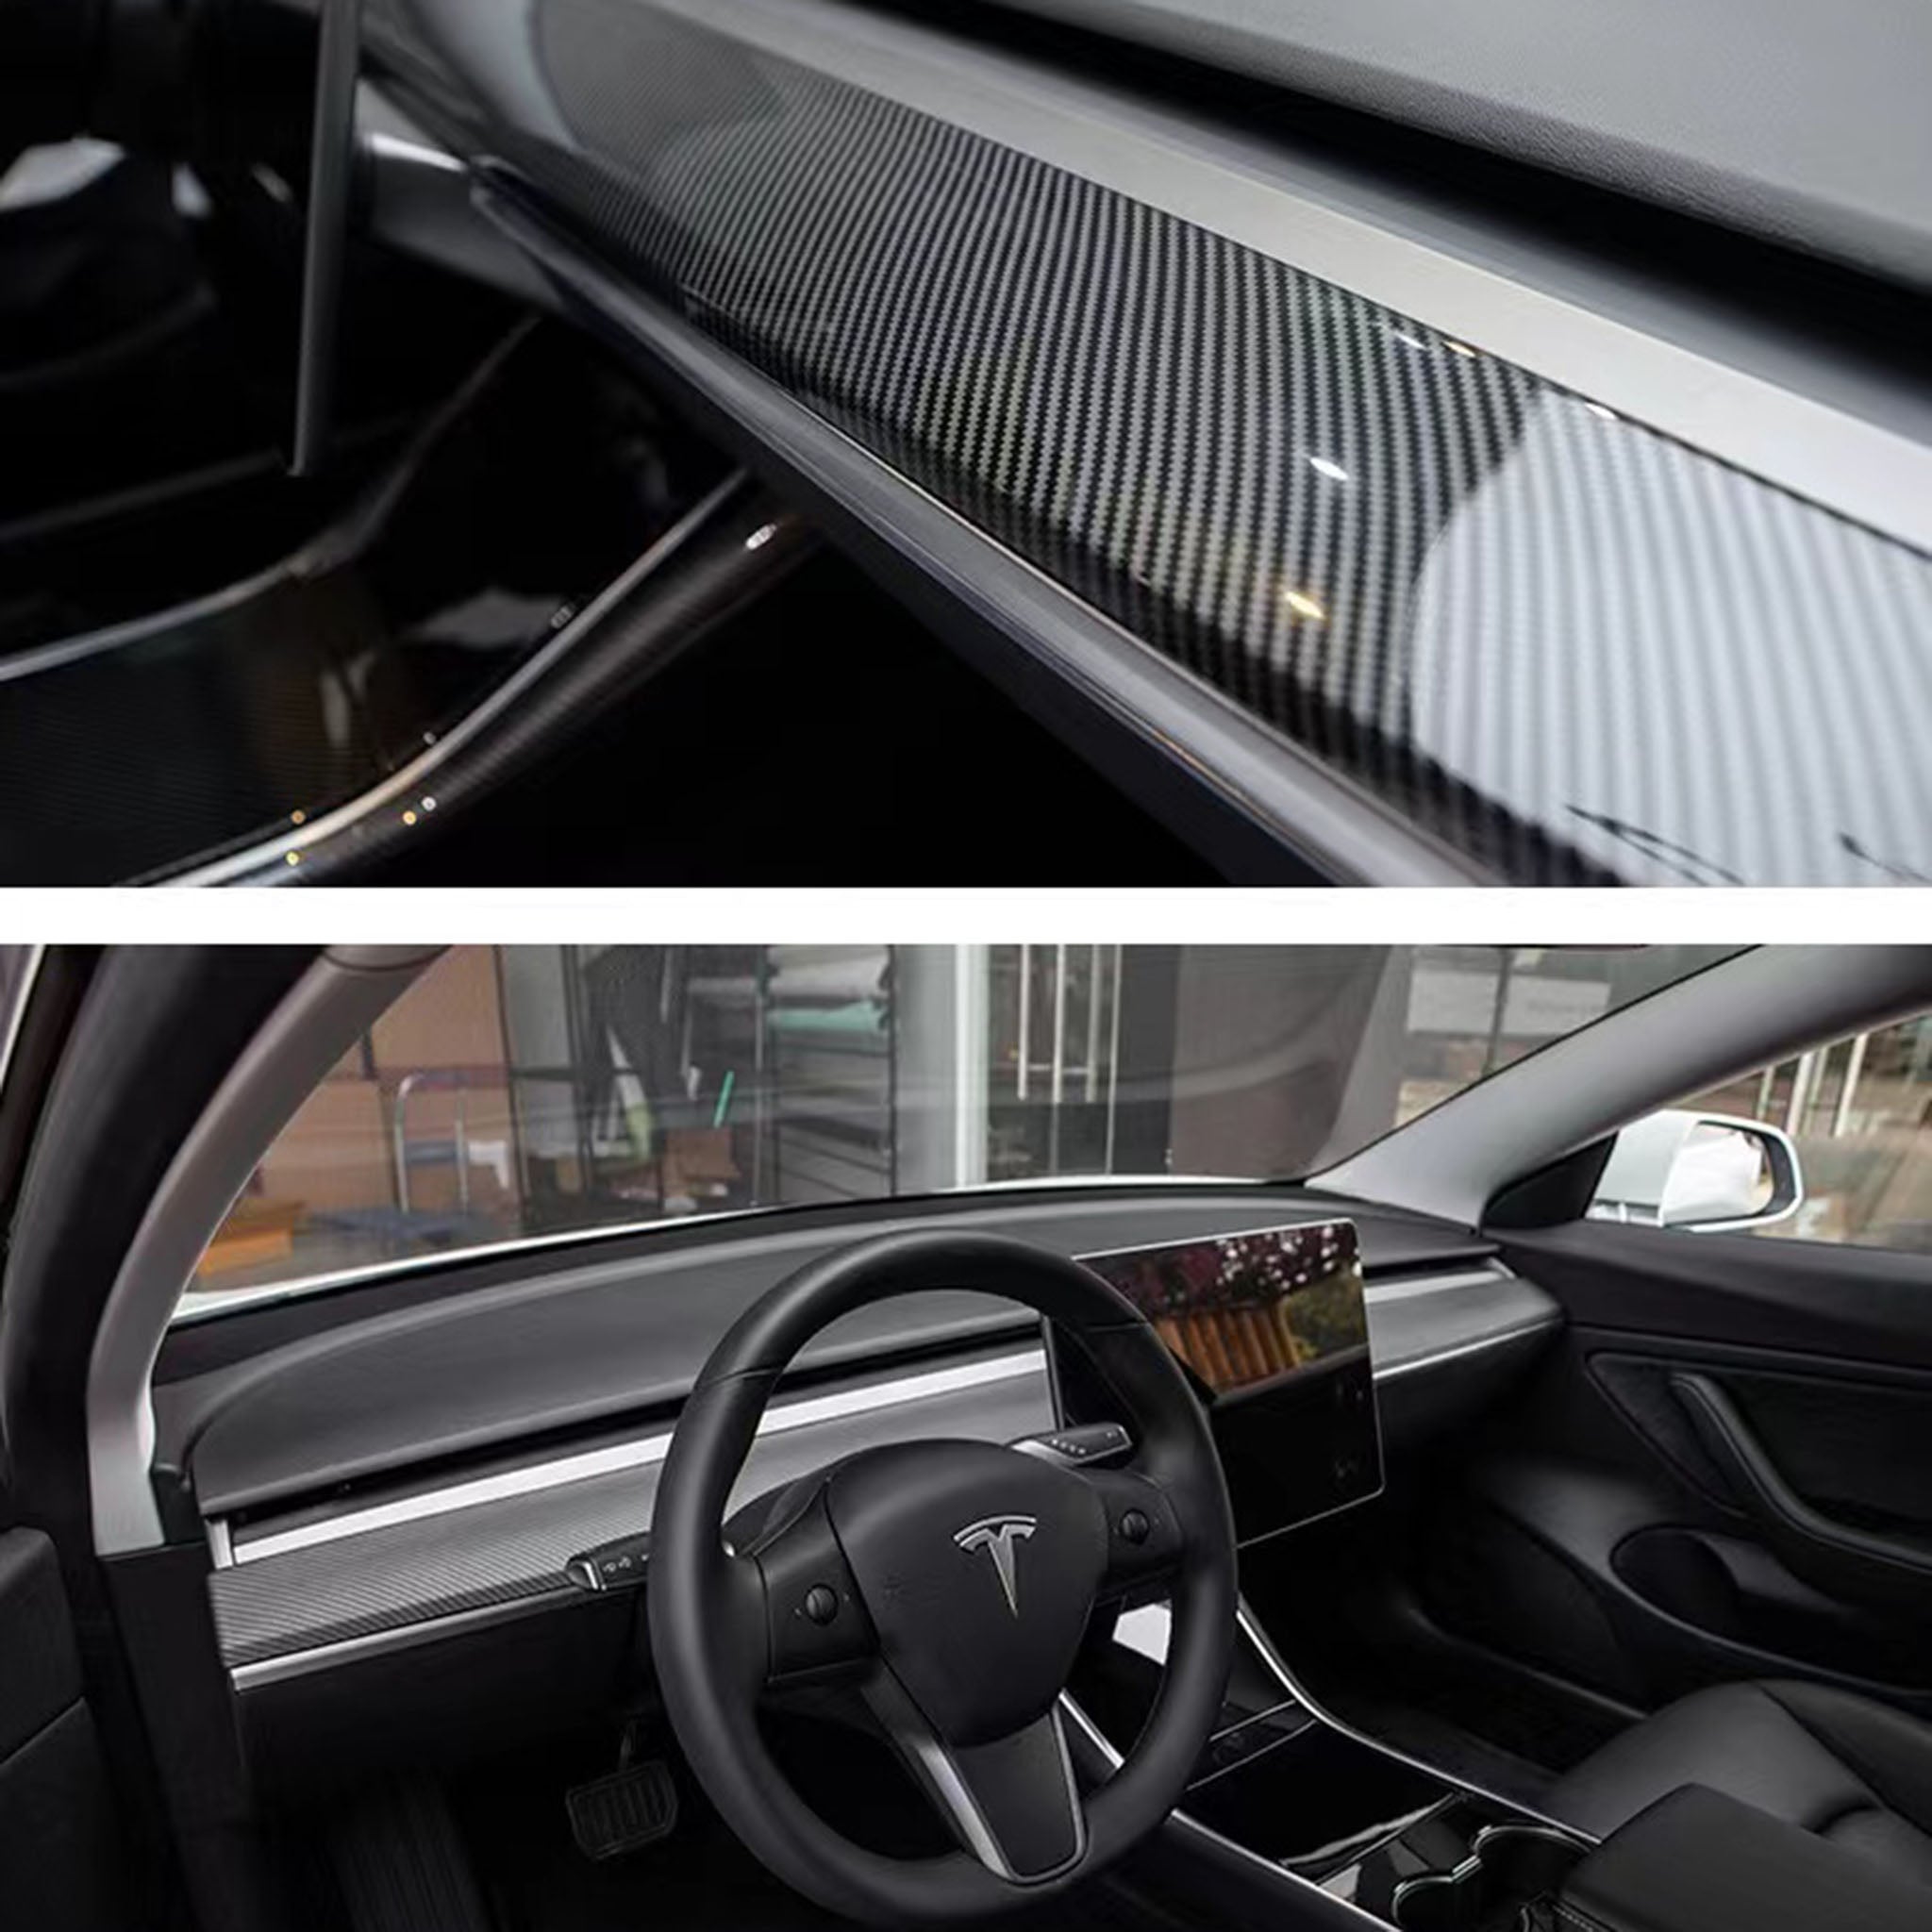 Bestes Model S Zubehör  Geschenkeladen für Tesla-Zubehör – tagged Model S  interior – Page 4 – Yeslak